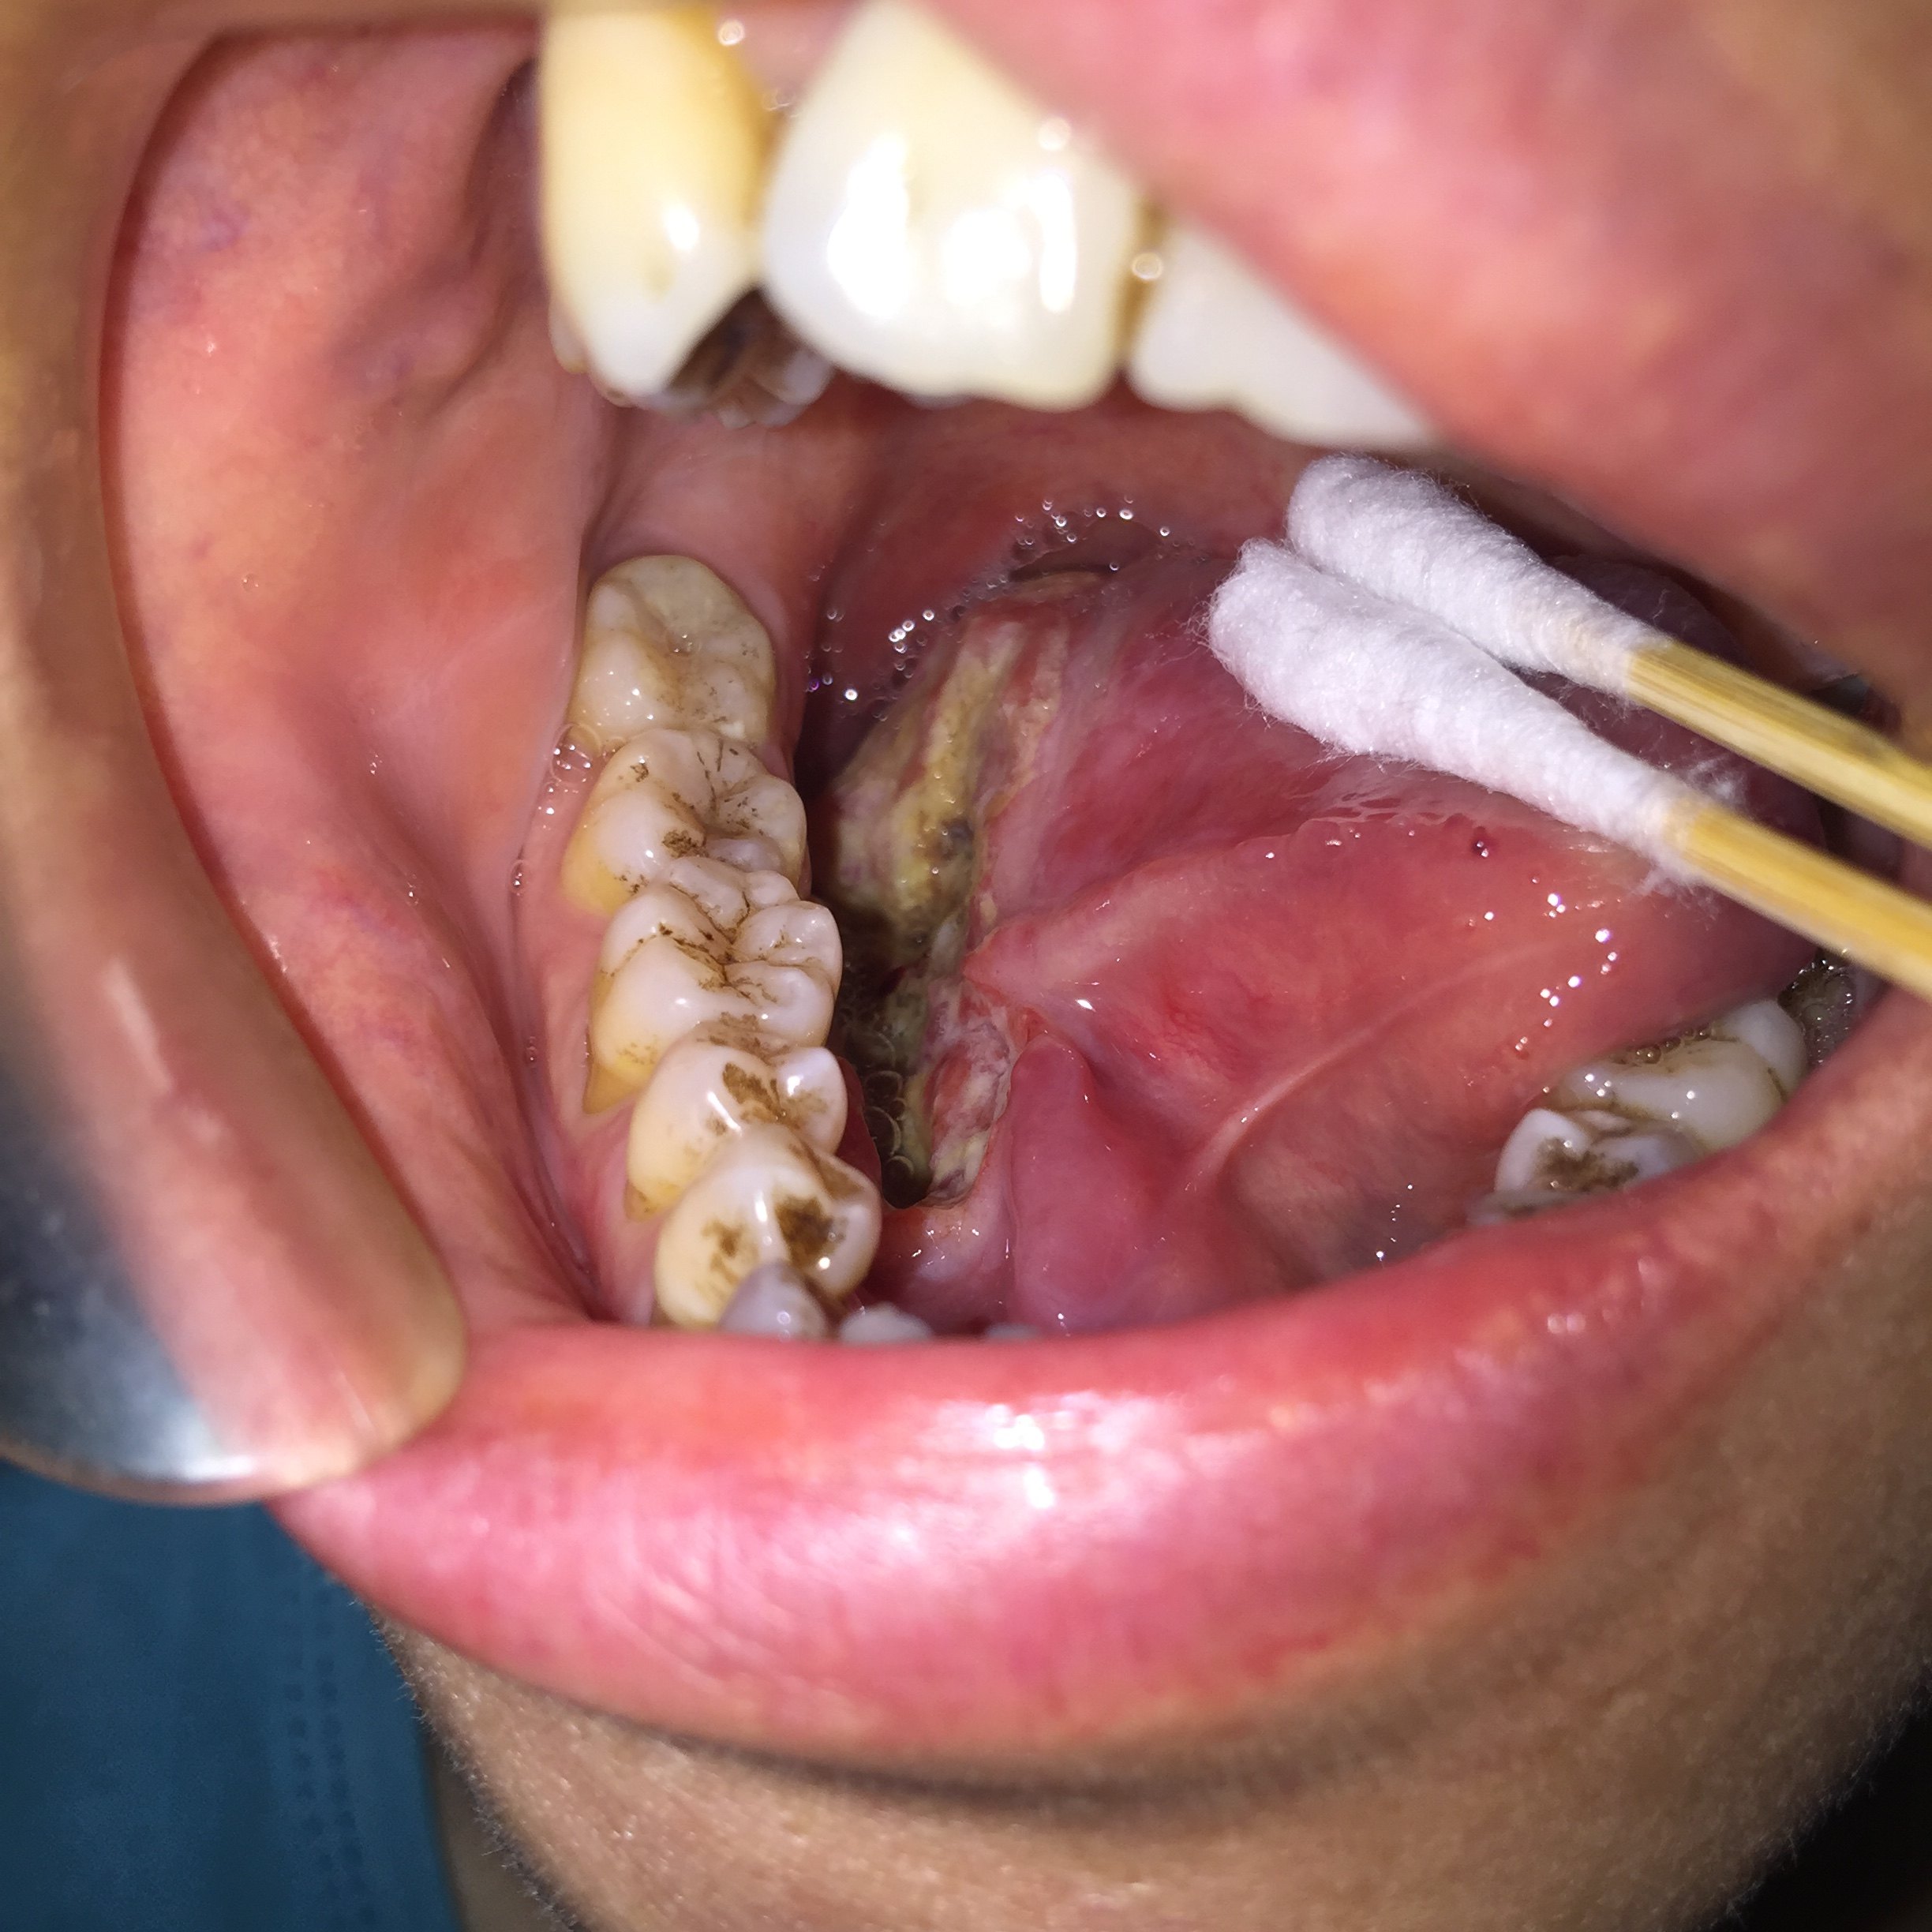 舌癌早期能治好吗图片